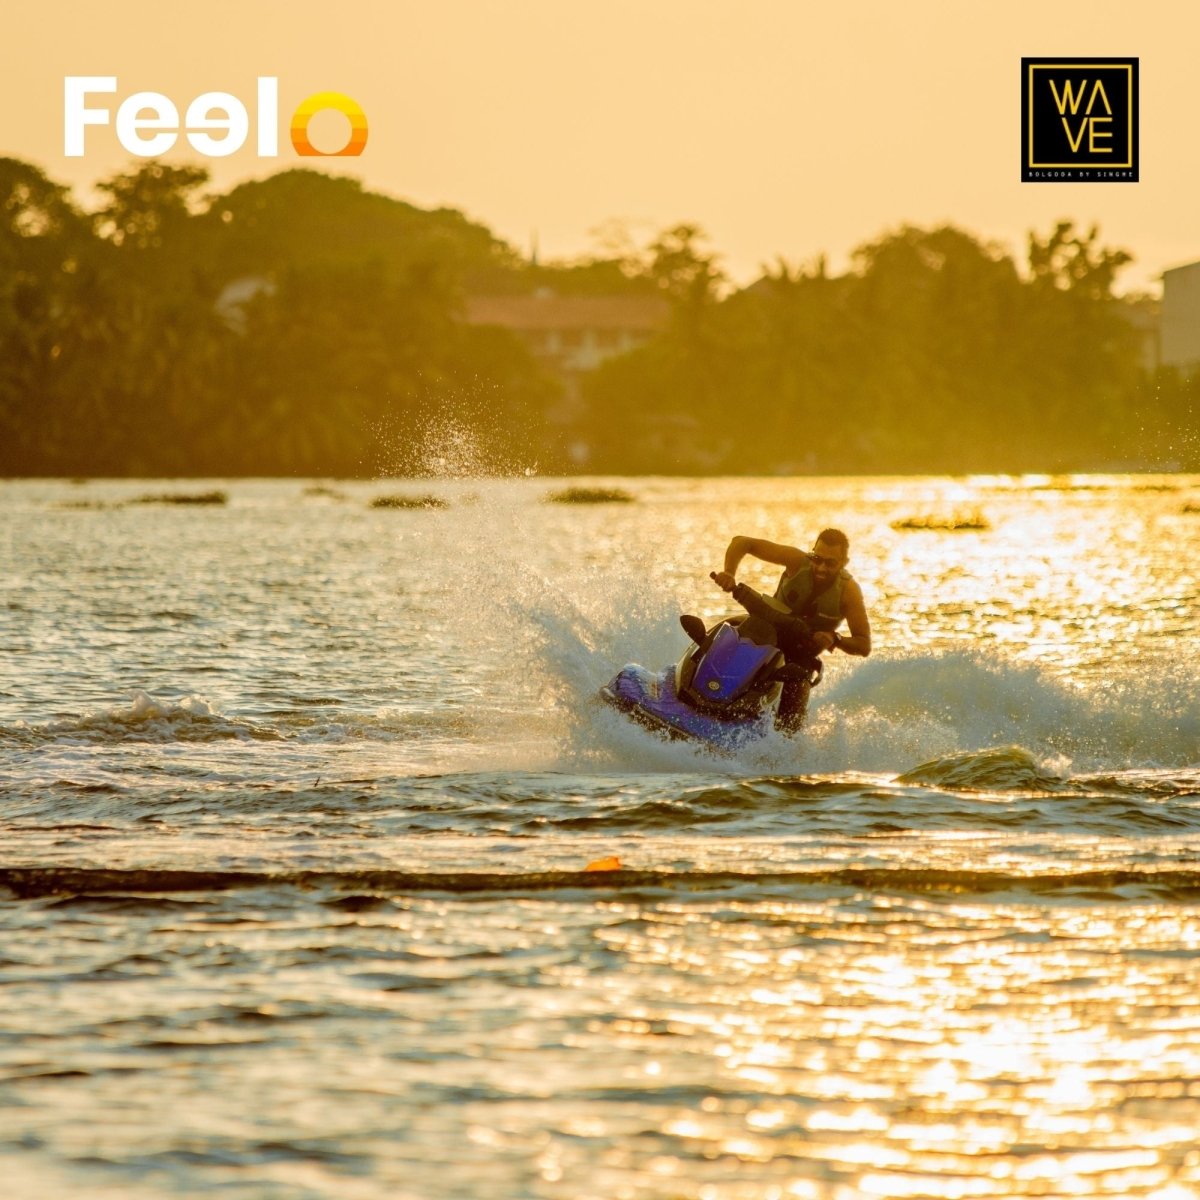 Jet Skiing on Sri Lanka's largest freshwater lake at Wave Bolgoda - Wave Bolgoda, Moratuwa | Feelo